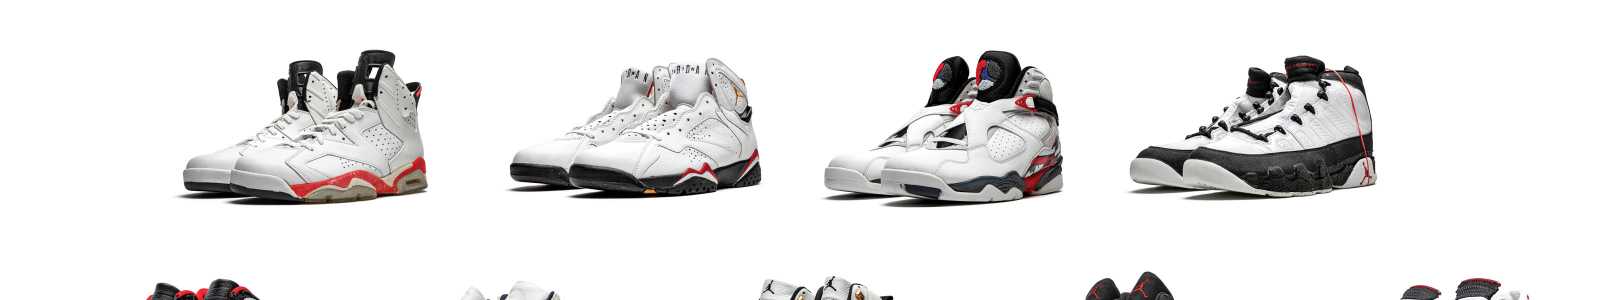 Original Air Takes Flight: Die Entwicklung und der Einfluss von Air Jordan Sneakers